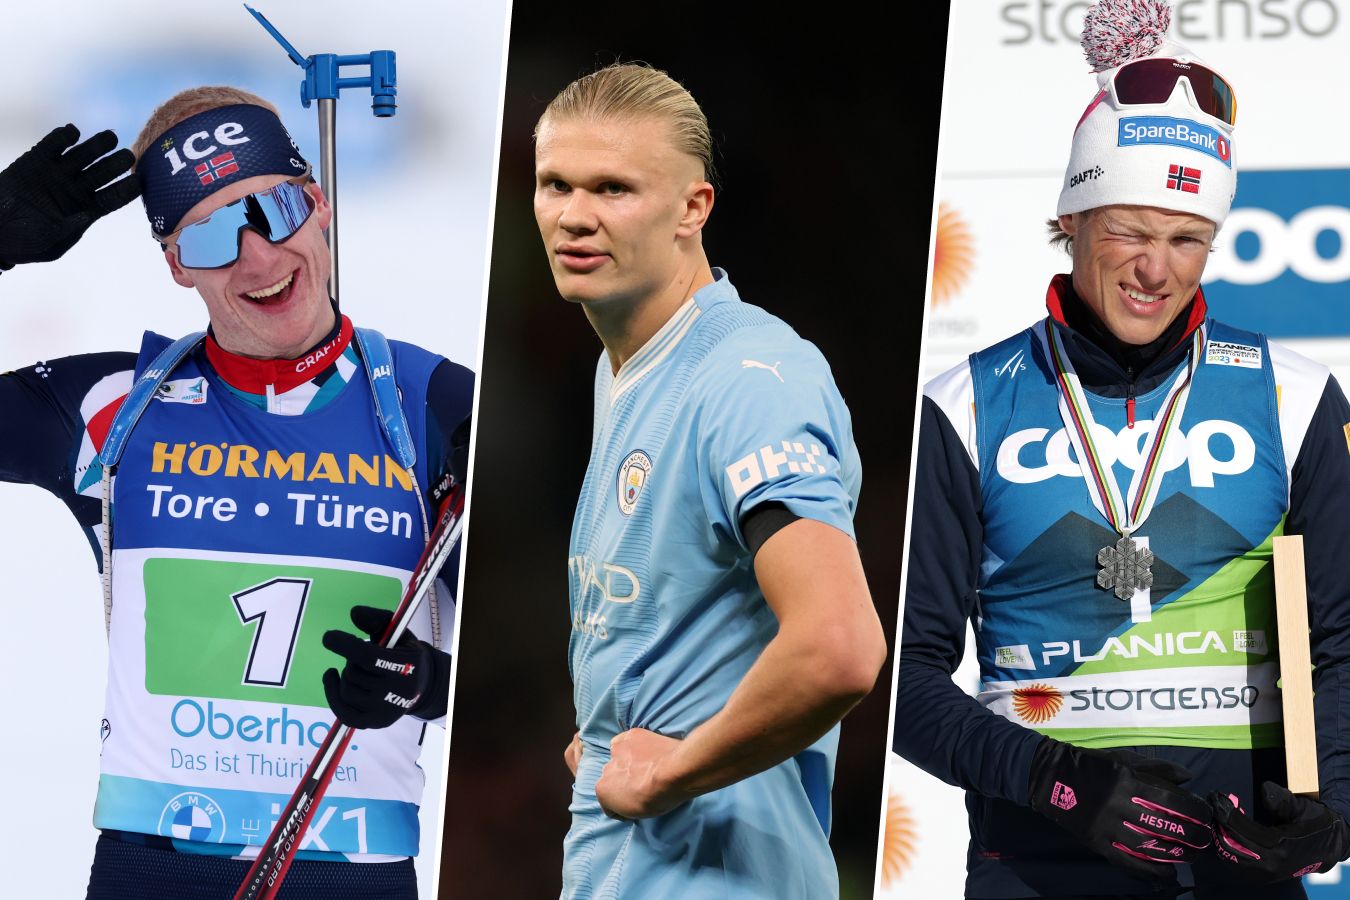 Топ-10 самых популярных спортсменов Норвегии. Братья Бё обошли Клебо и Холанда!